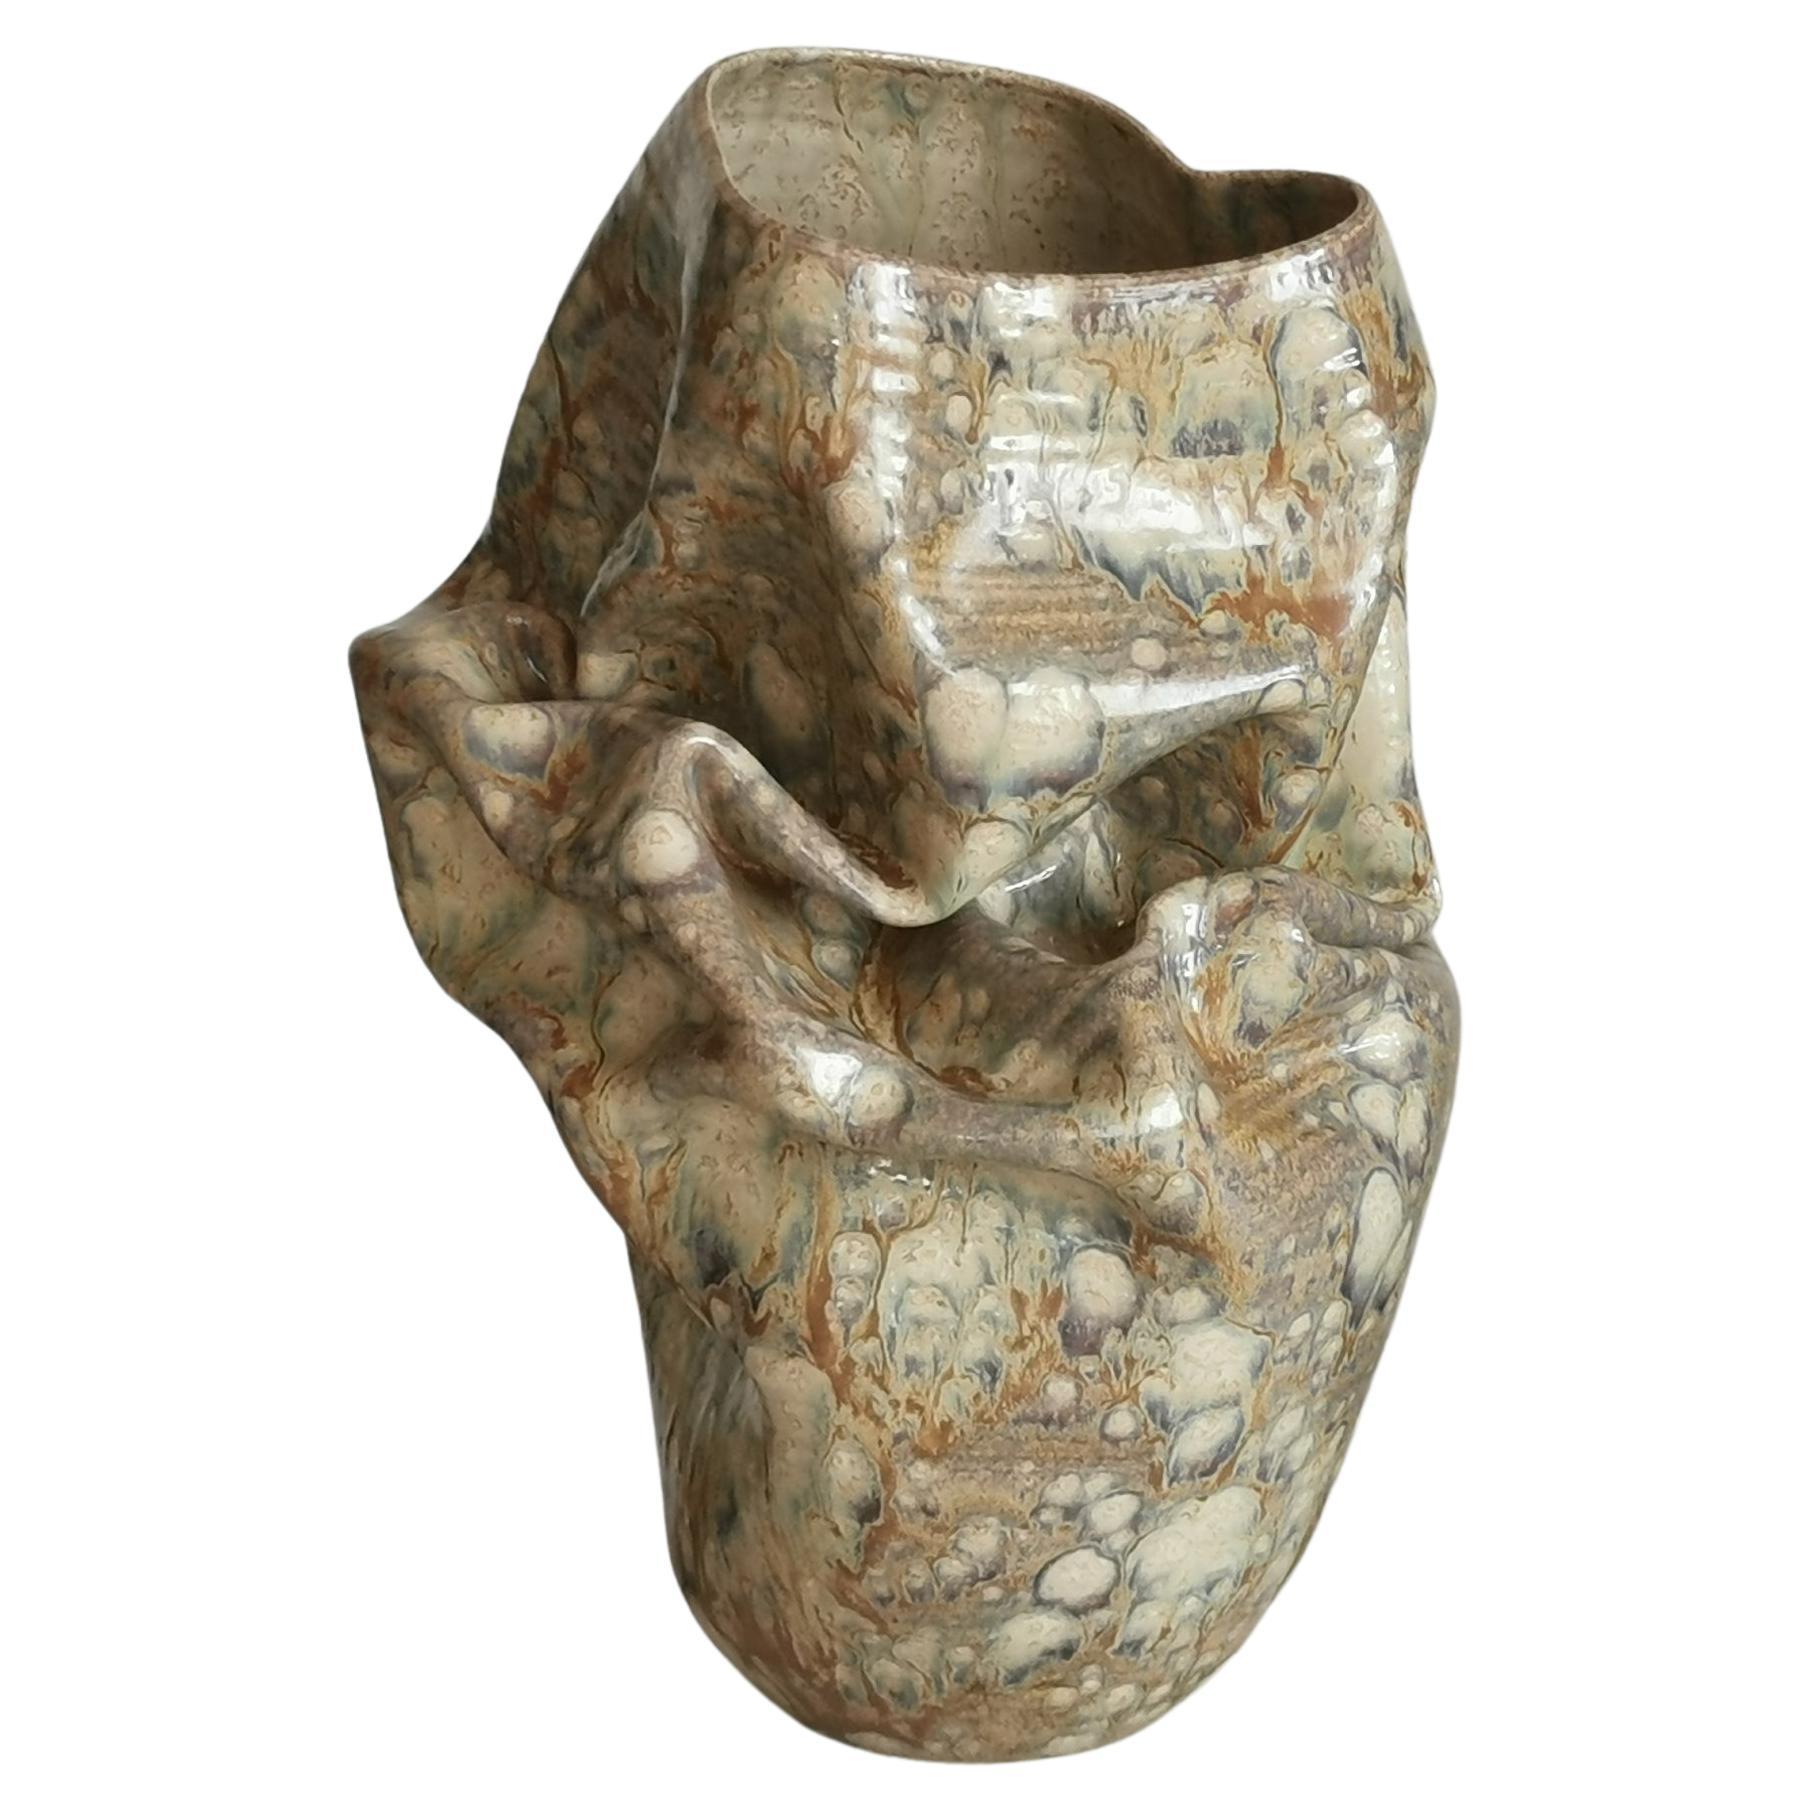 Medium Collapsed Crumpled Form, Desert Dusk, Vessel No.127, Ceramic Sculpture